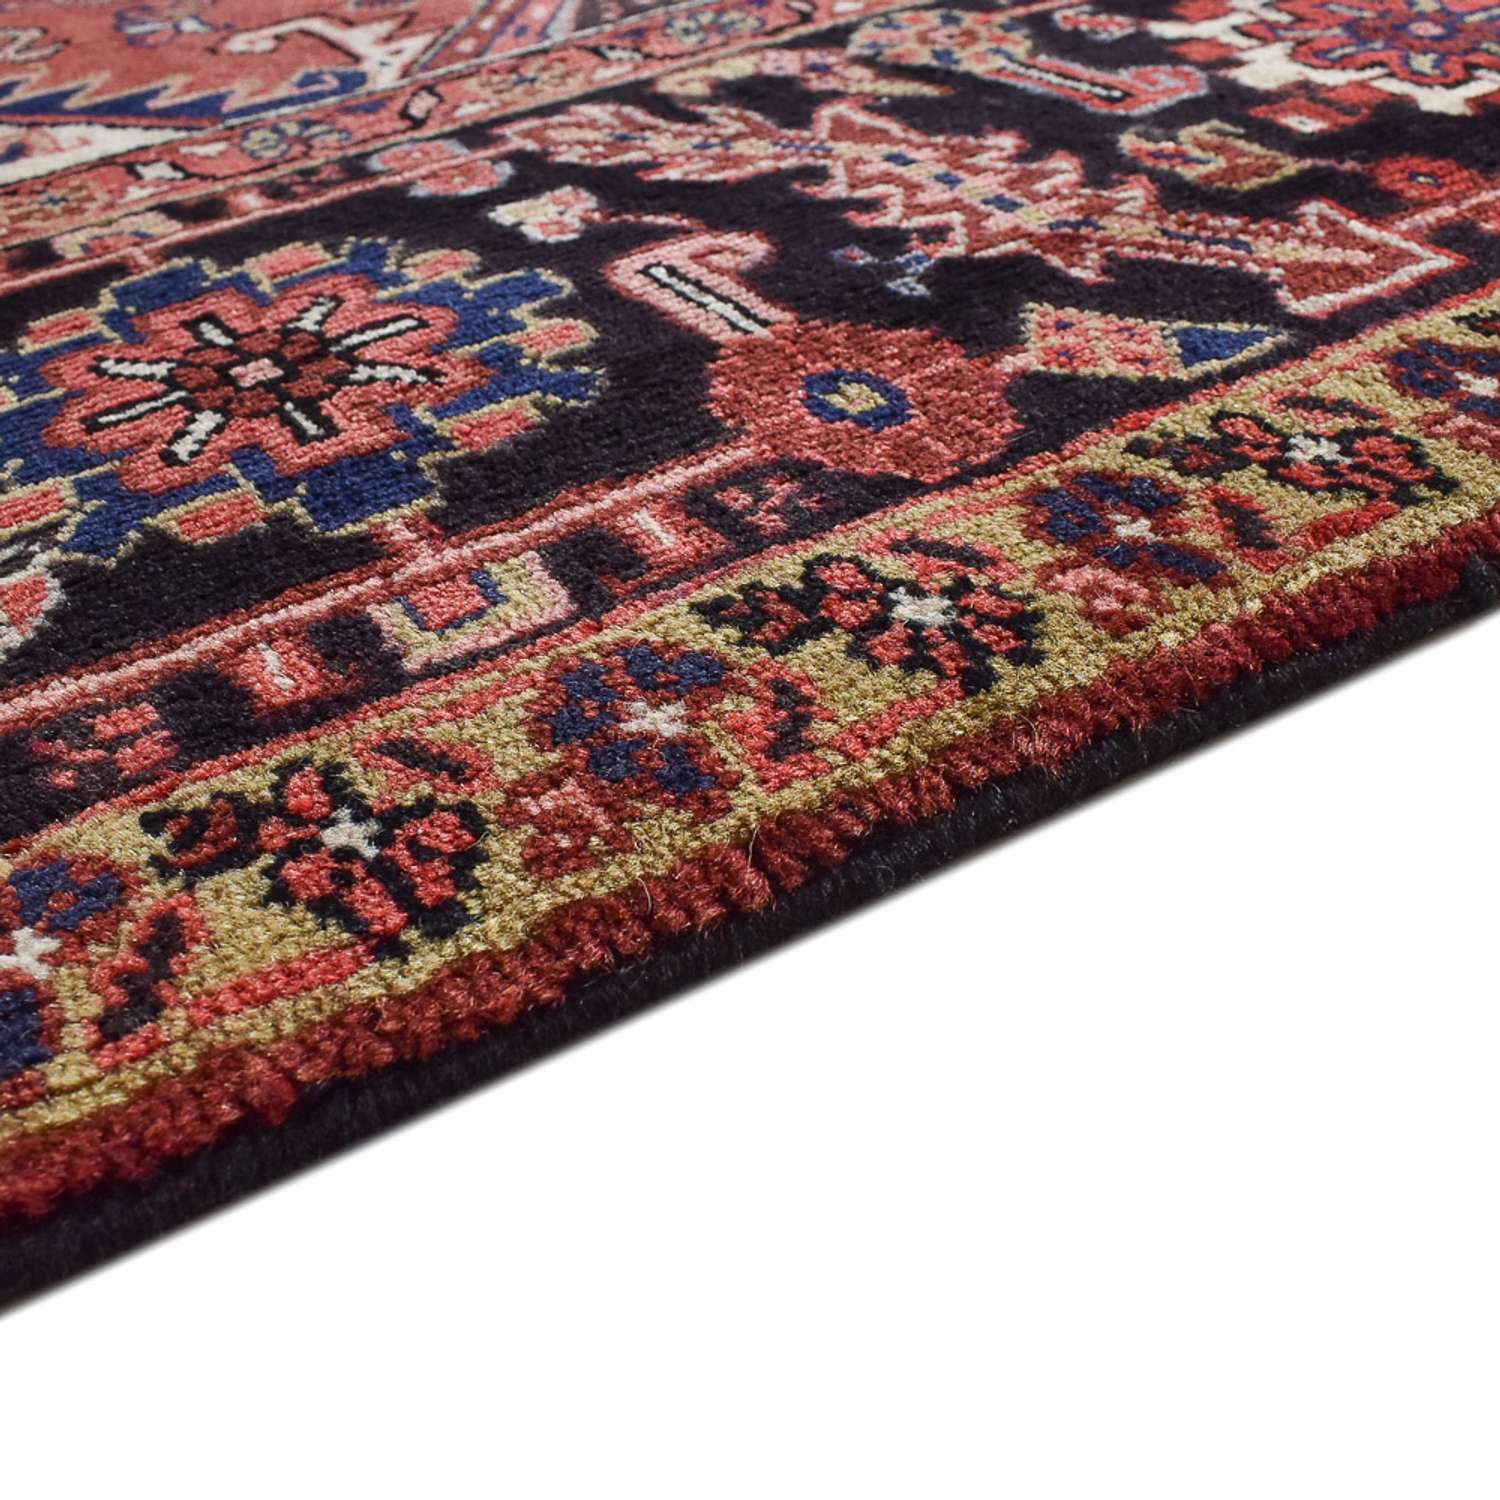 Perski dywan - Nomadyczny kształt specjalny  - 372 x 302 cm - czerwony